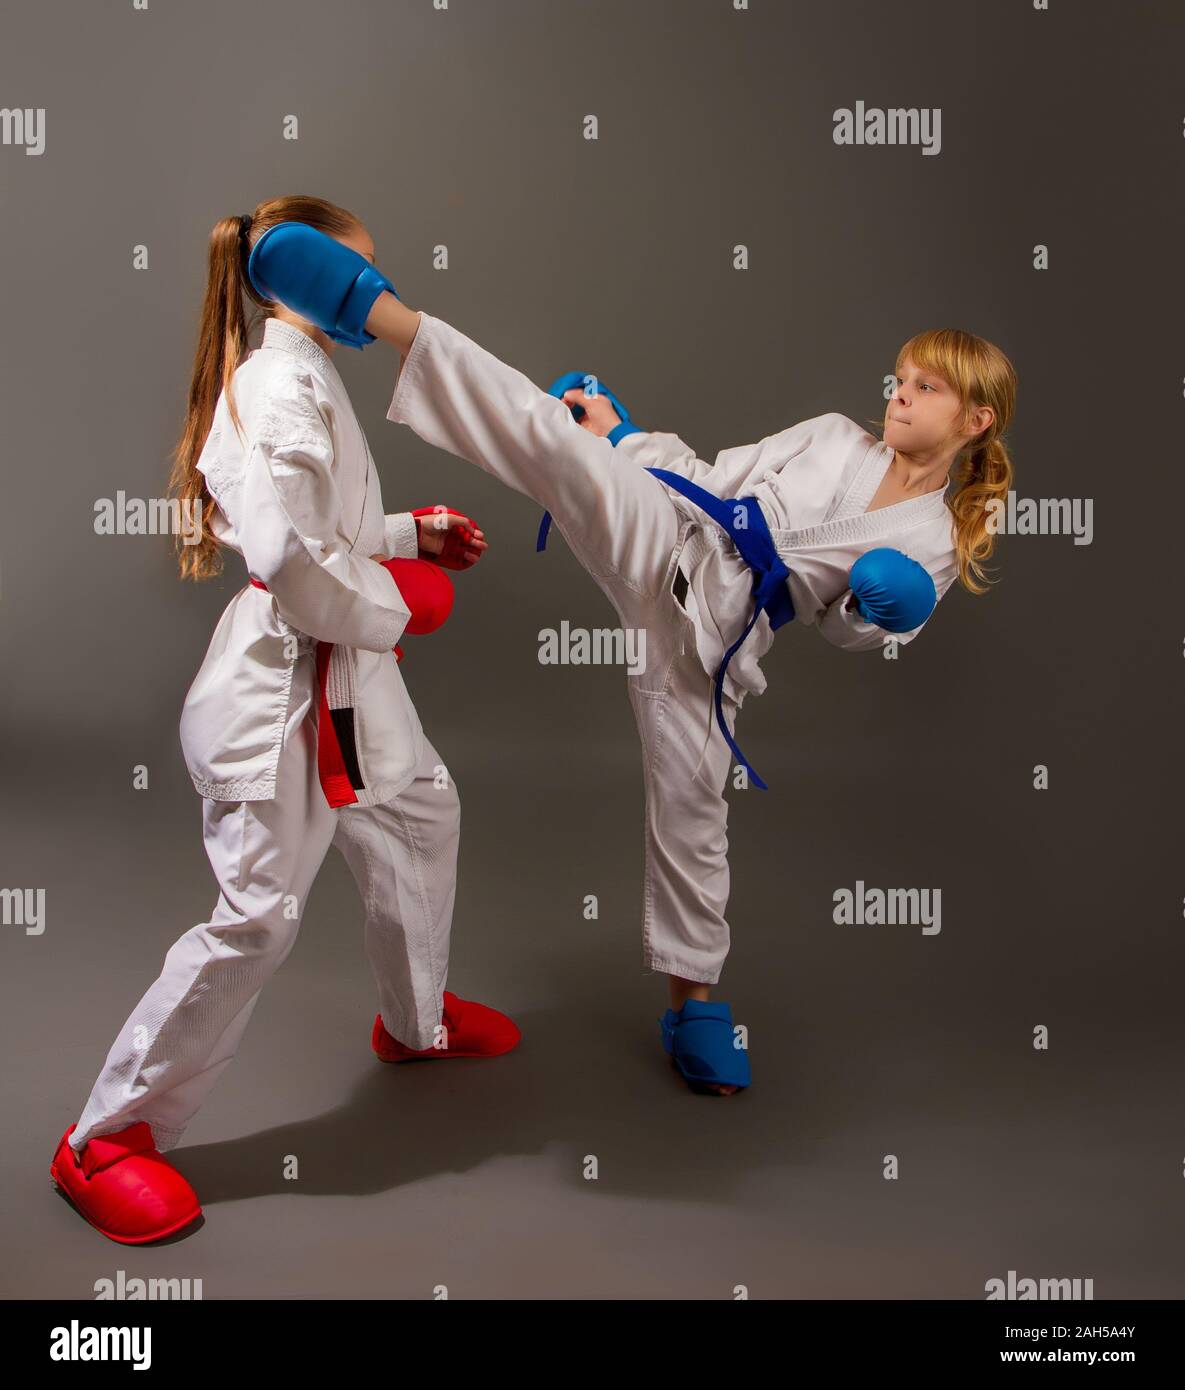 Le Karaté sportif lutte deux petites filles en kimono blanc en rouge une  seconde en kits de protection bleu Photo Stock - Alamy